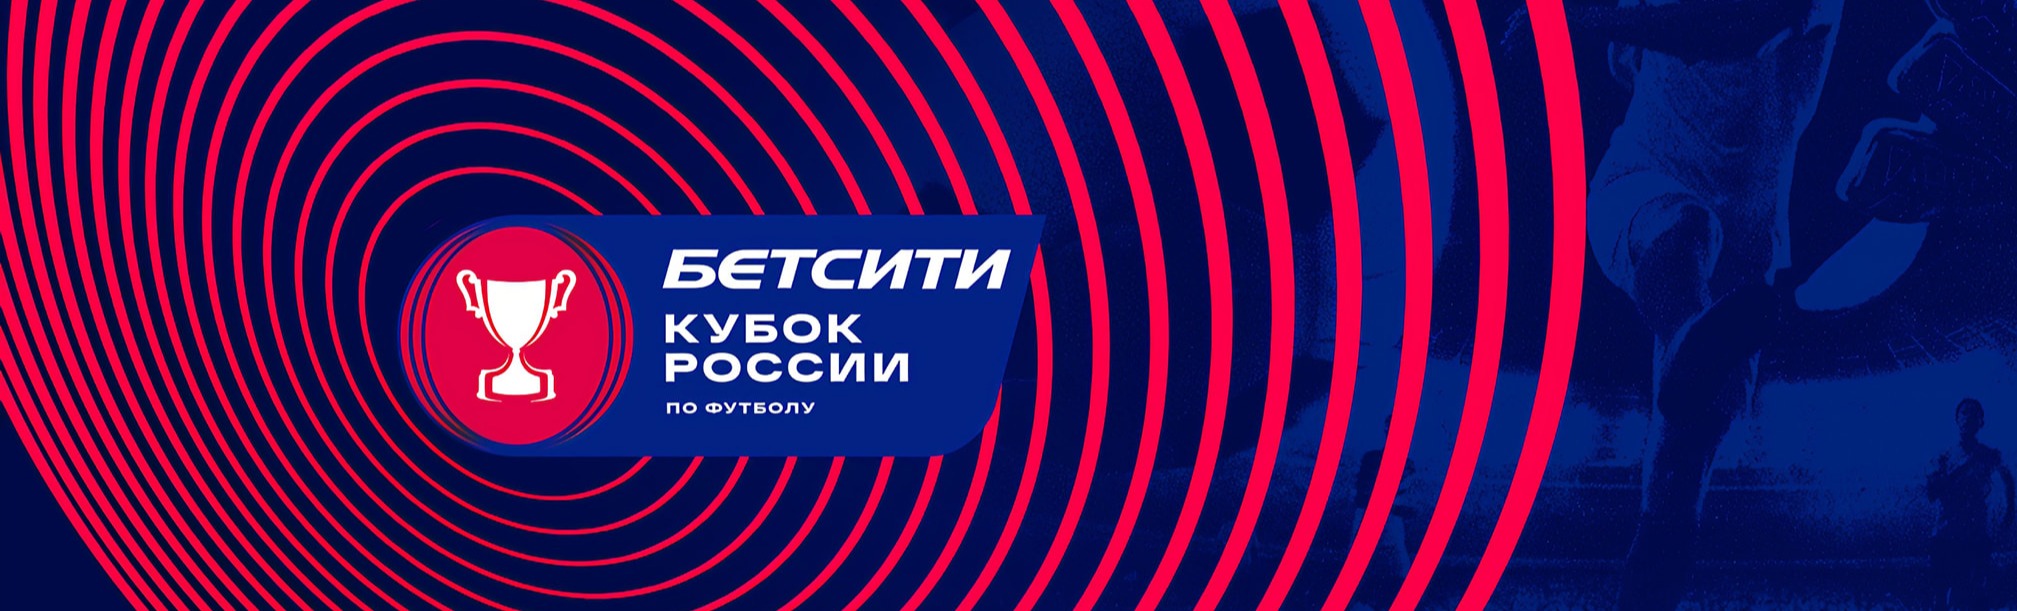 Определены соперники «Крыльев Советов» в Кубке России
